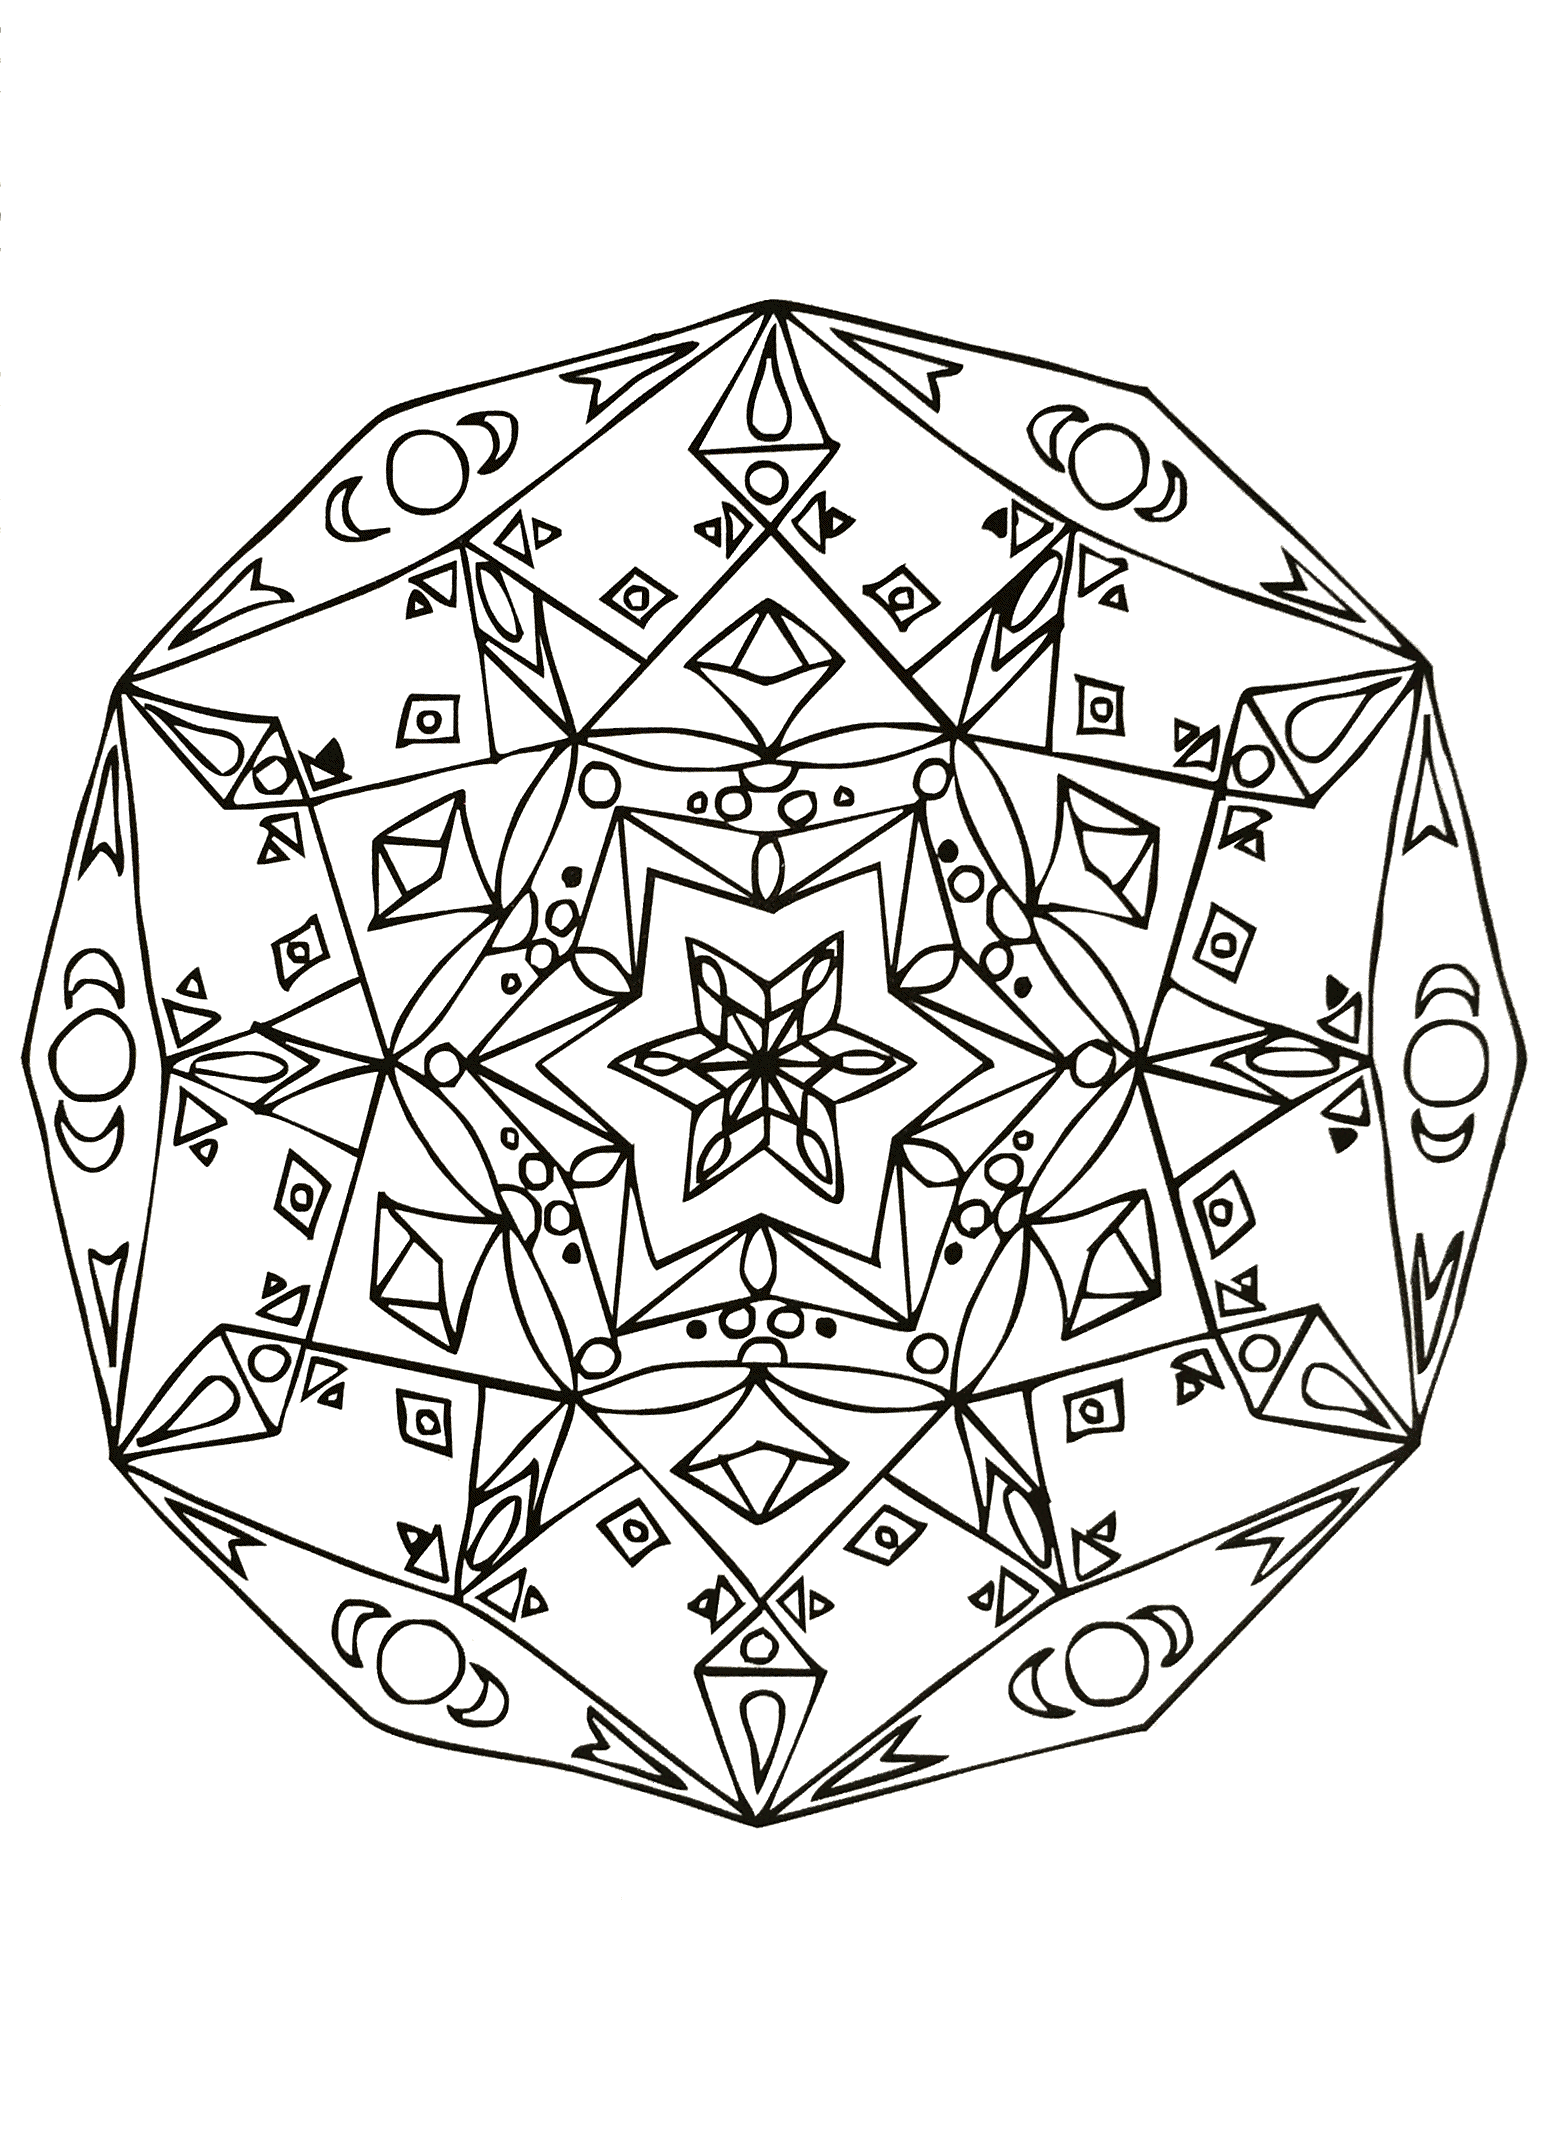 Un Mandala assez difficile à colorier, parfait si vous aimez mettre en couleur de petites zones, et si vous aimez les détails variés.